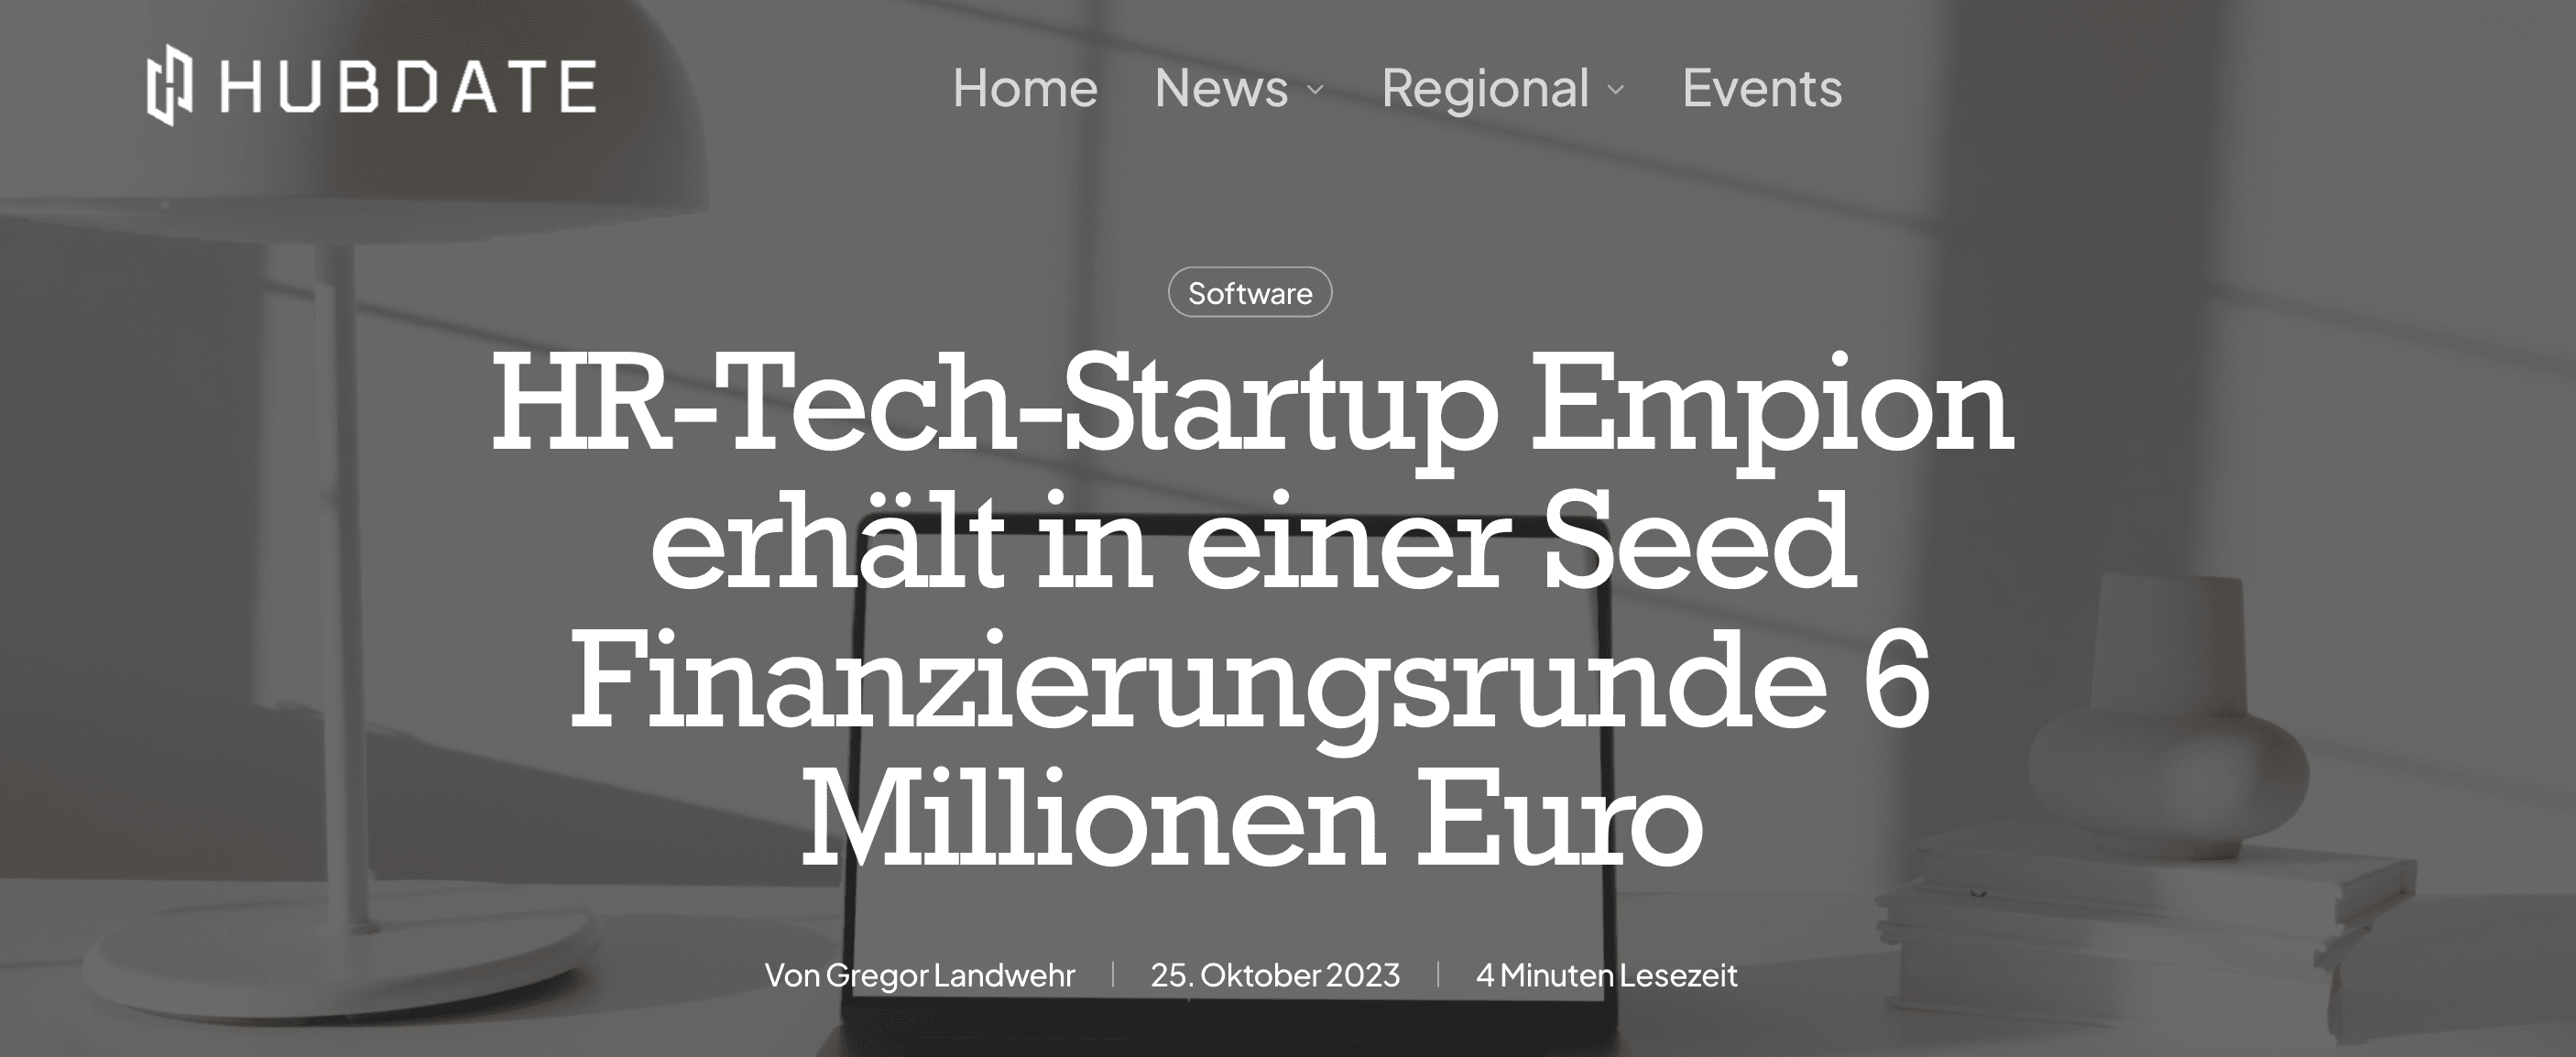 HR-Tech-Startup Empion erhält in einer Seed Finanzierungsrunde 6 Millionen Euro